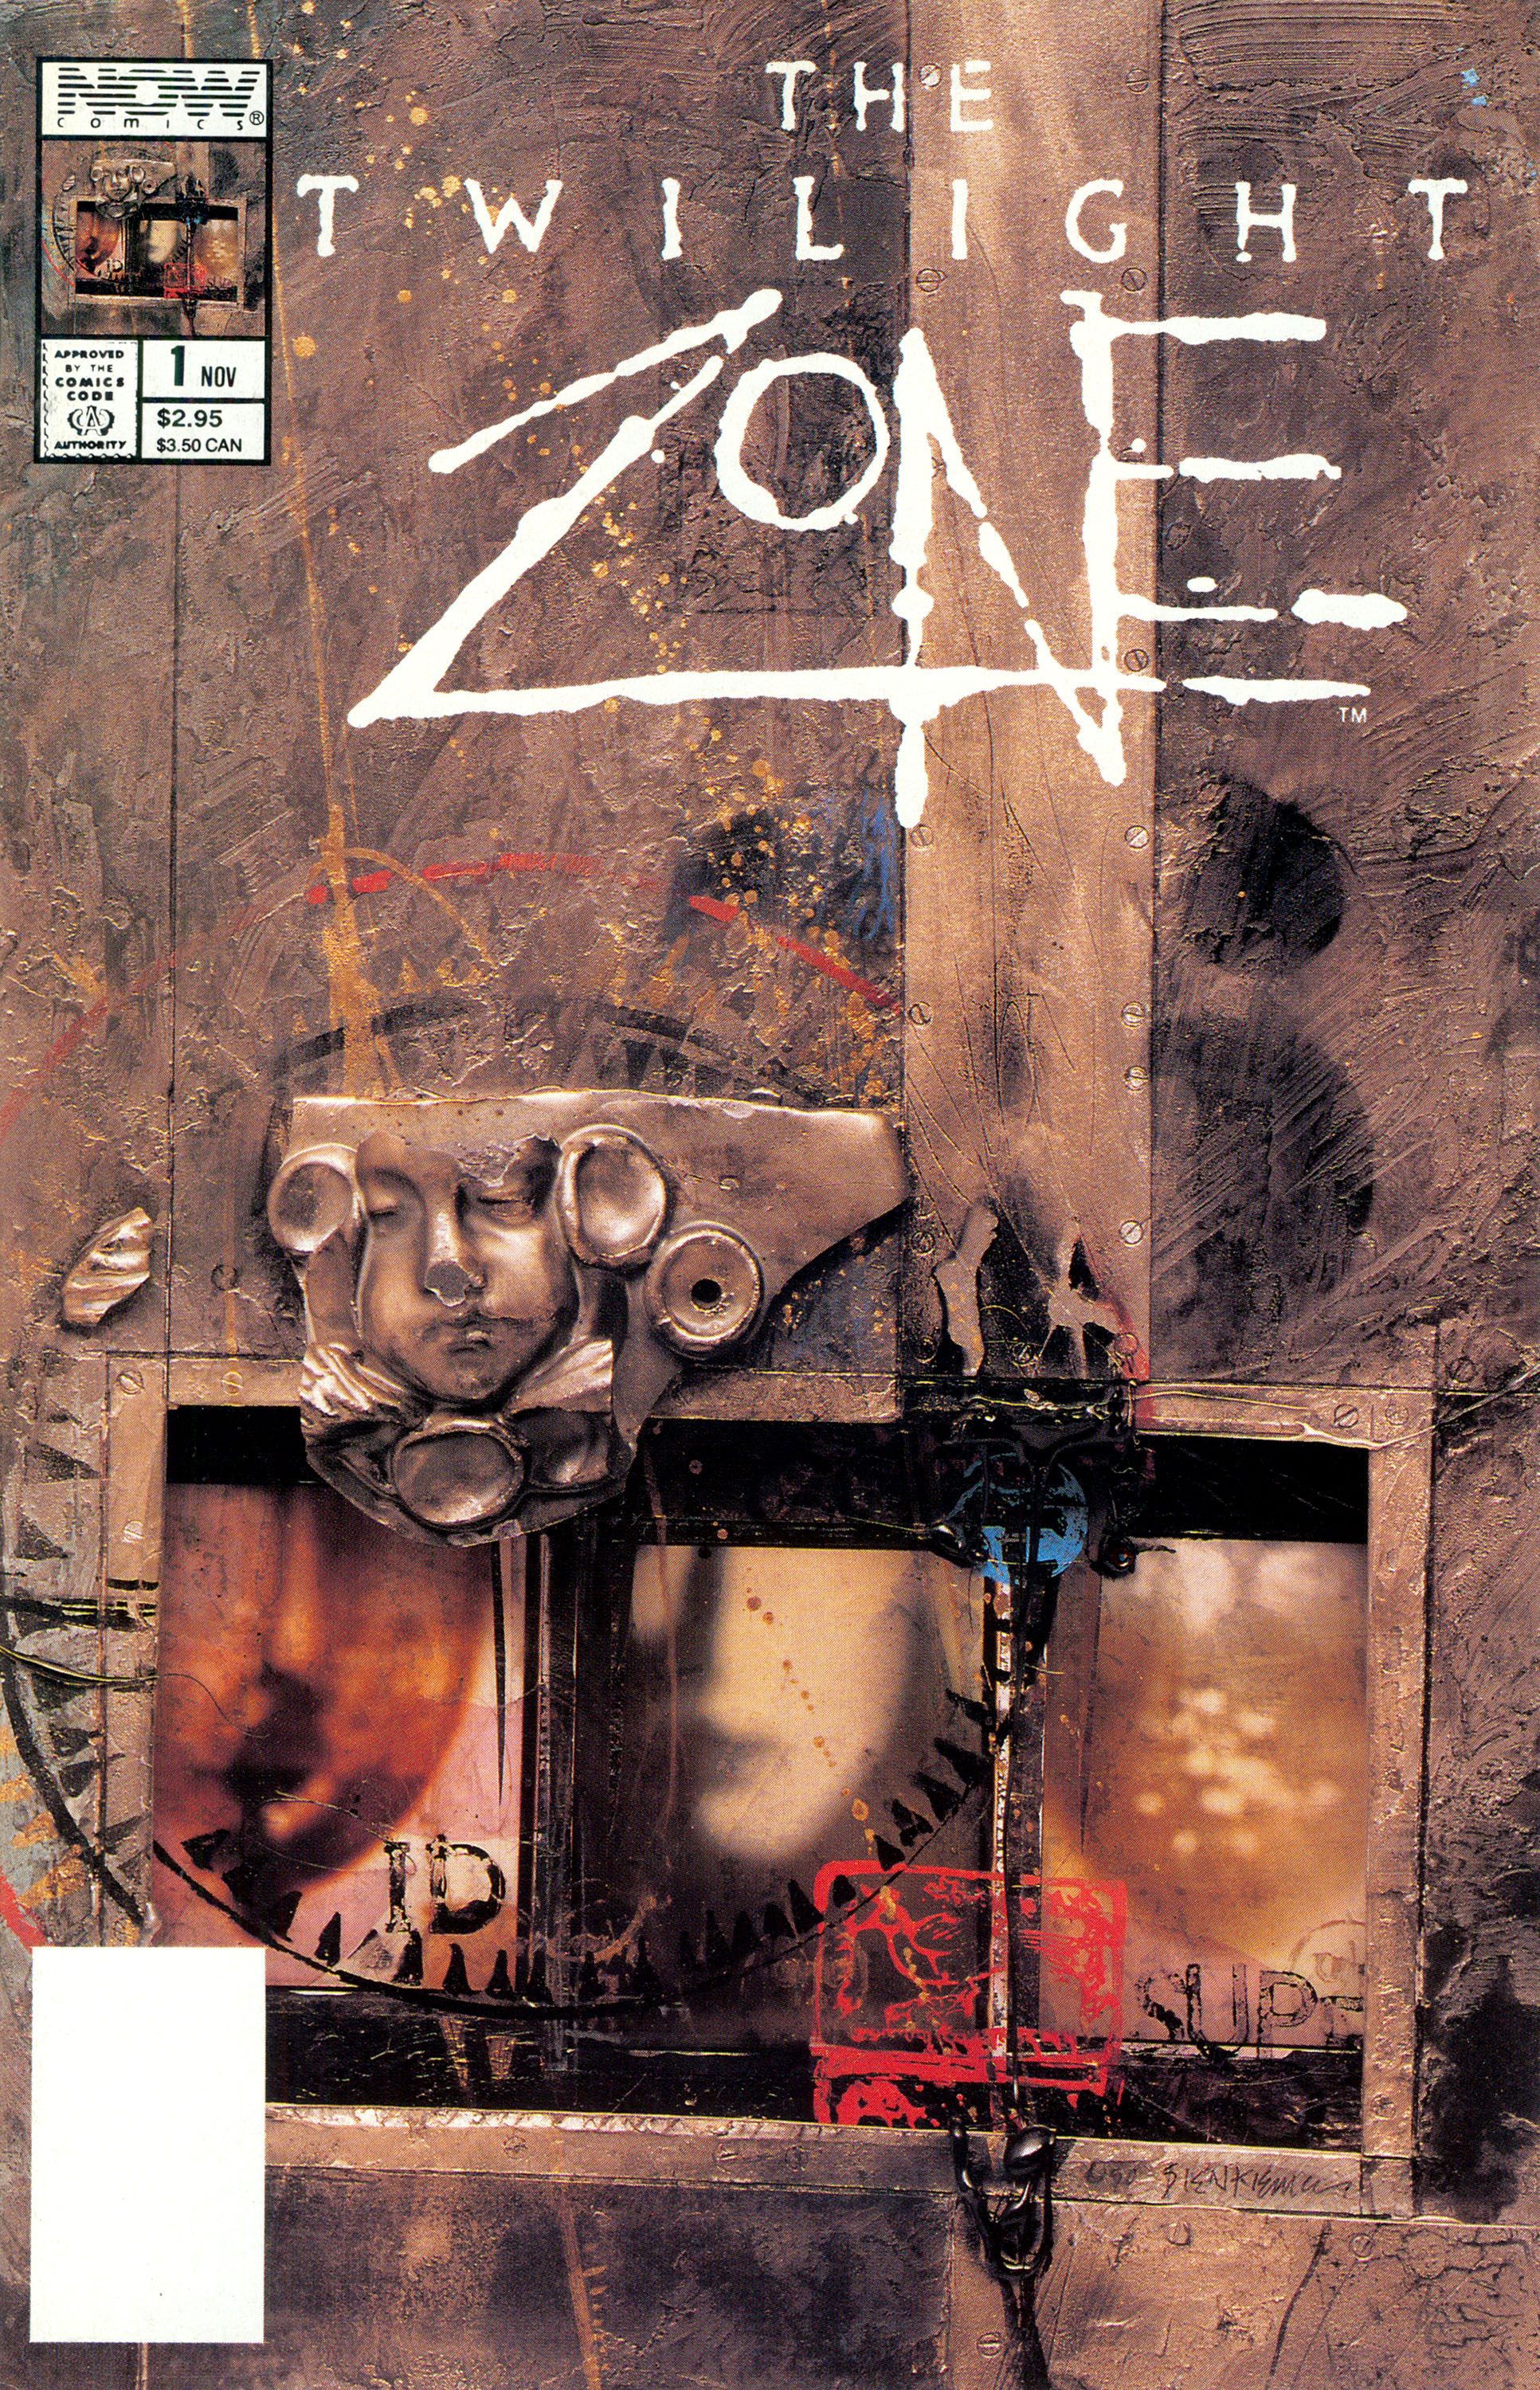 Twilight Zone #1, cover, art by Bill Sienkiewicz